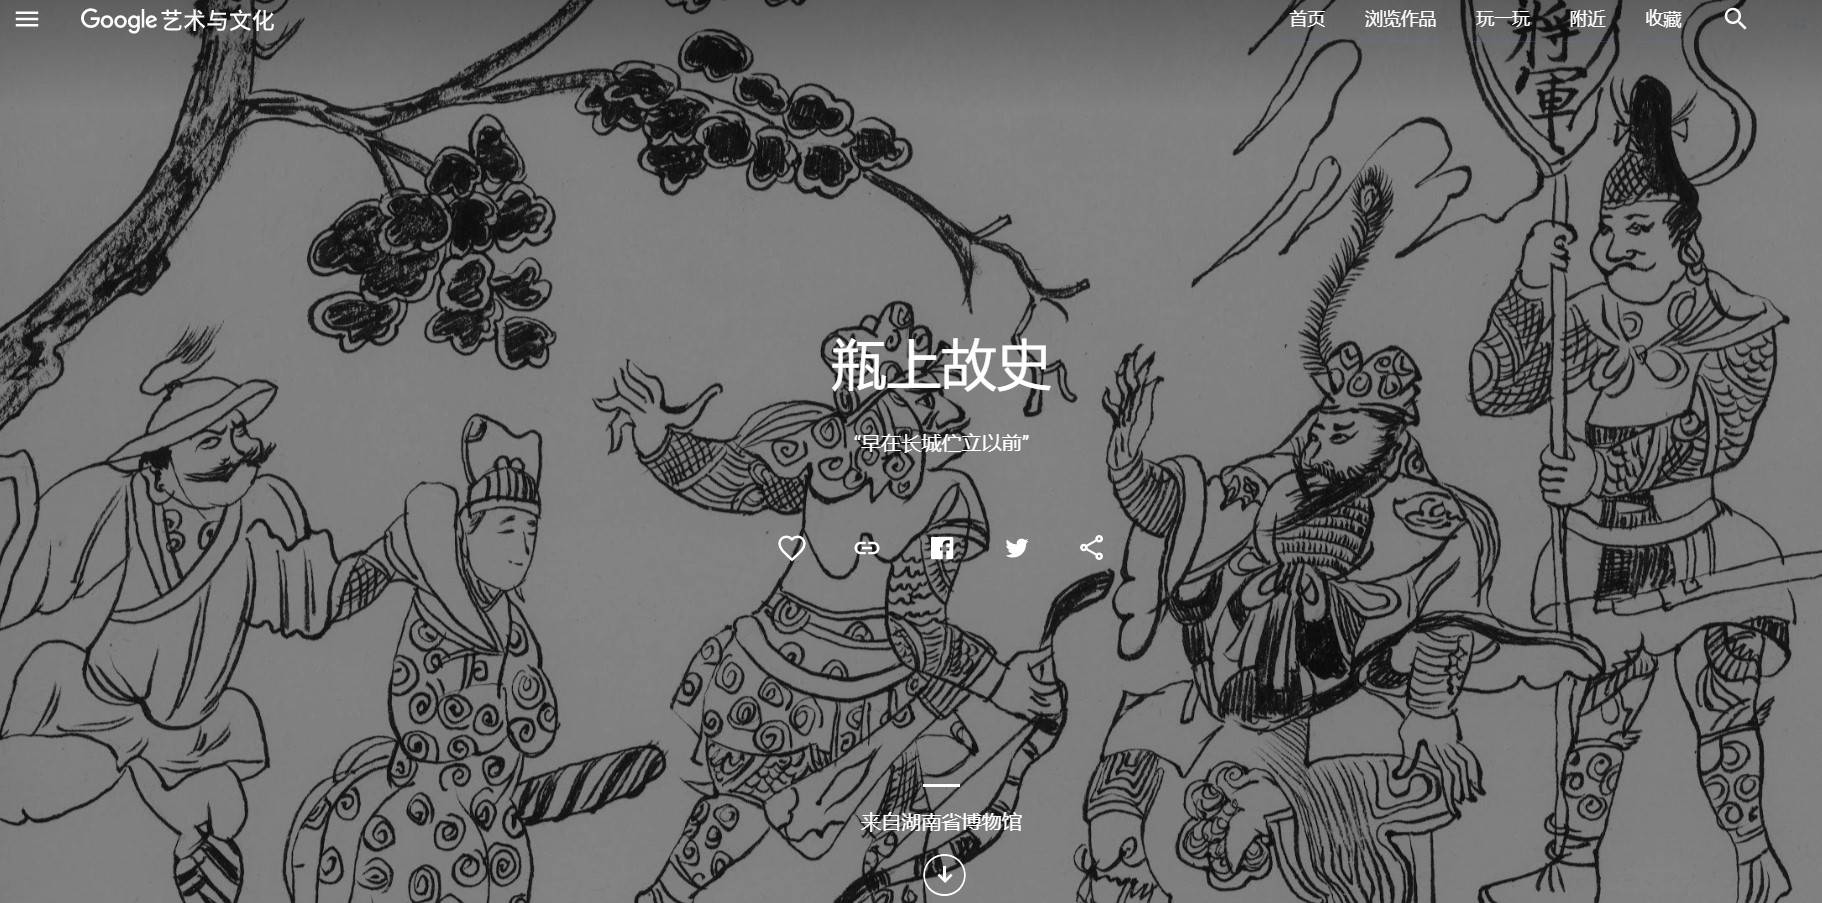 google11 - Dalle donne della dinastia Tang alle forcine delle principesse, Google vuole che tu veda le reliquie culturali senza uscire di casa